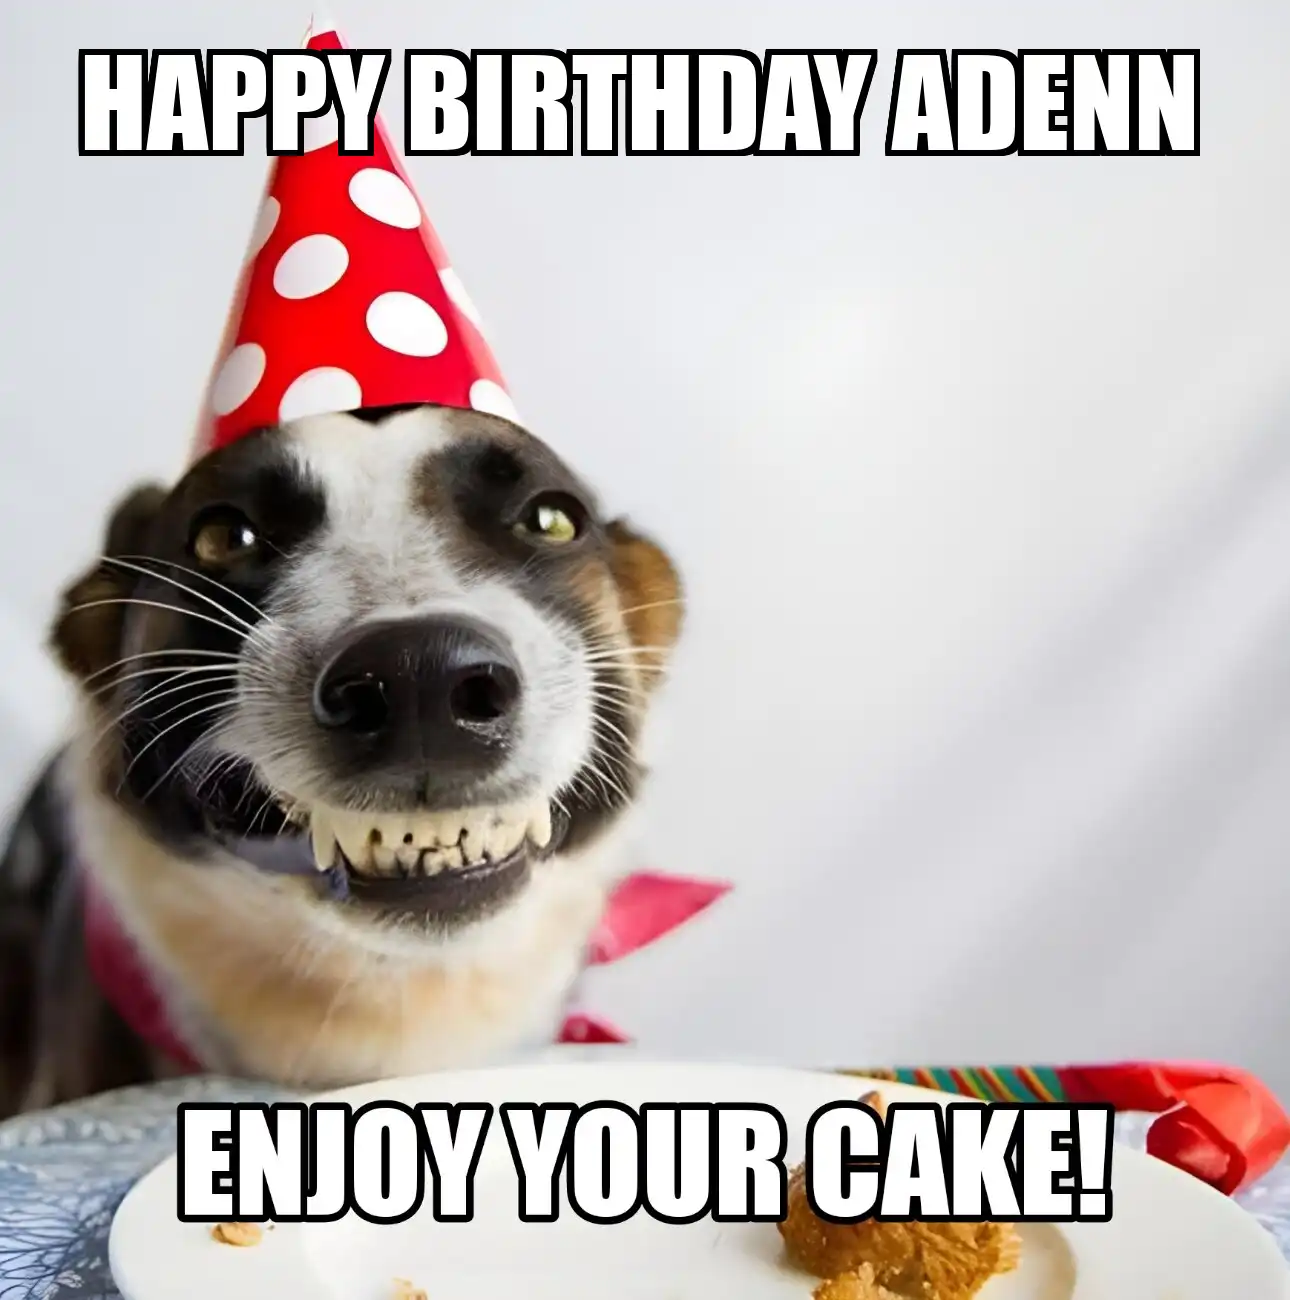 Happy Birthday Adenn Enjoy Your Cake Dog Meme